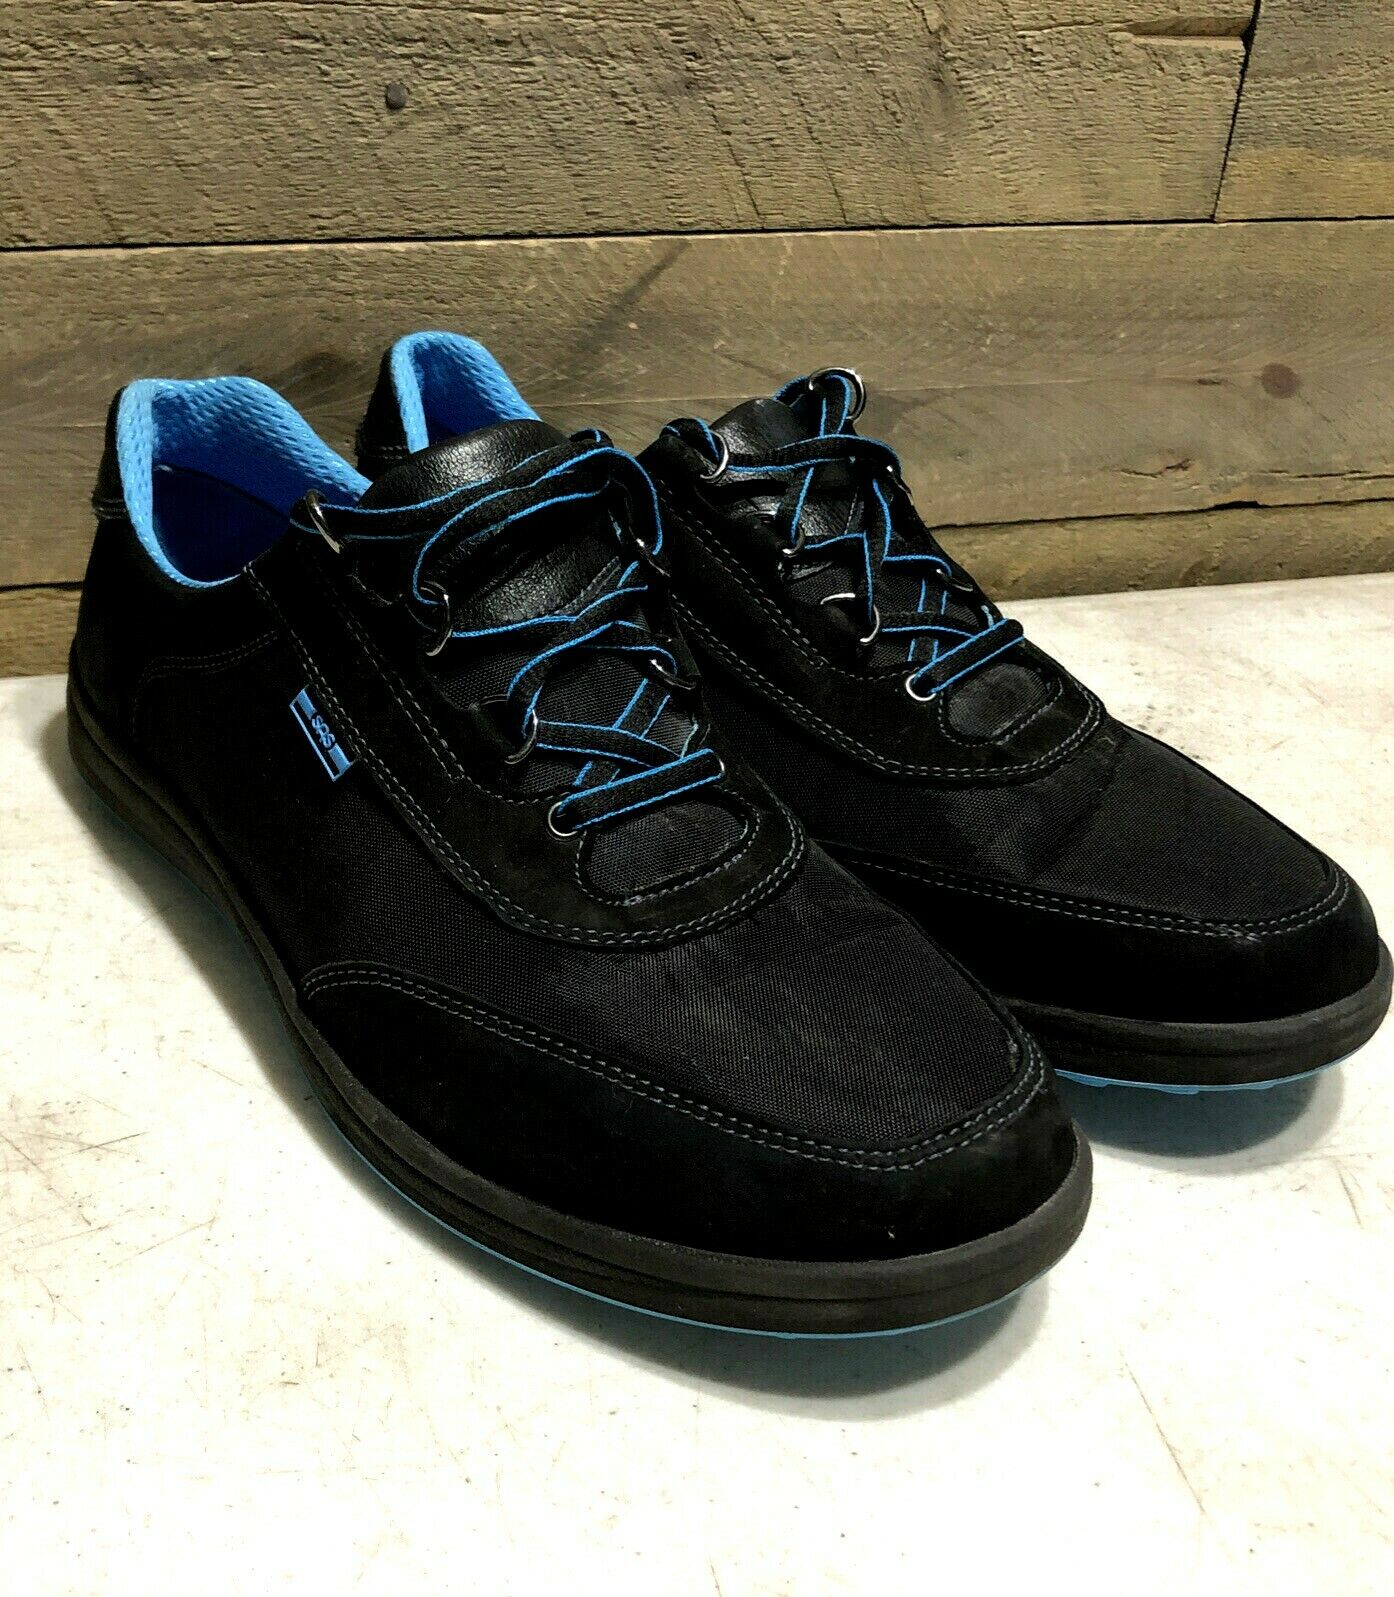 SAS Womens Shoes Black Waterproof Non Slip Walking Shoes Size 10 M Excellent!